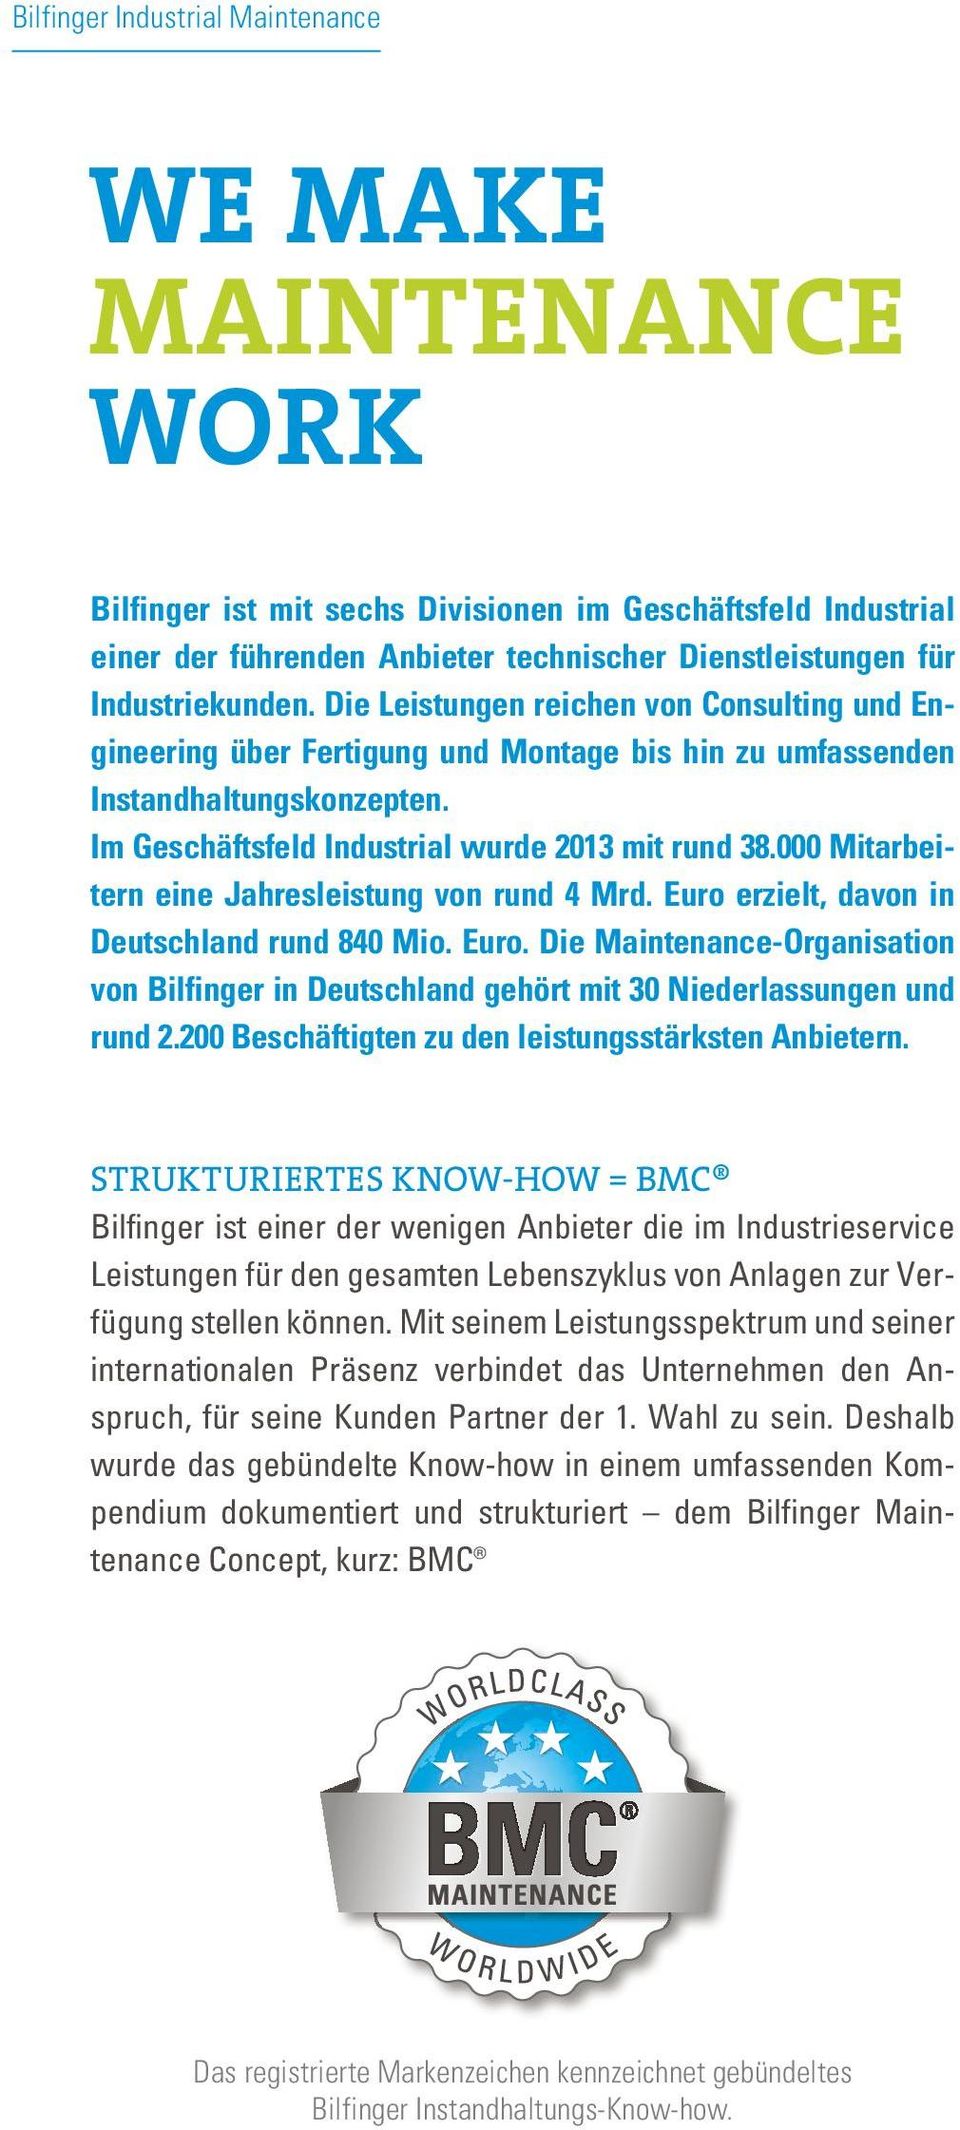 000 Mitarbeitern eine Jahresleistung von rund 4 Mrd. Euro erzielt, davon in Deutschland rund 840 Mio. Euro. Die Maintenance-Organisation von Bilfinger in Deutschland gehört mit 30 Niederlassungen und rund 2.